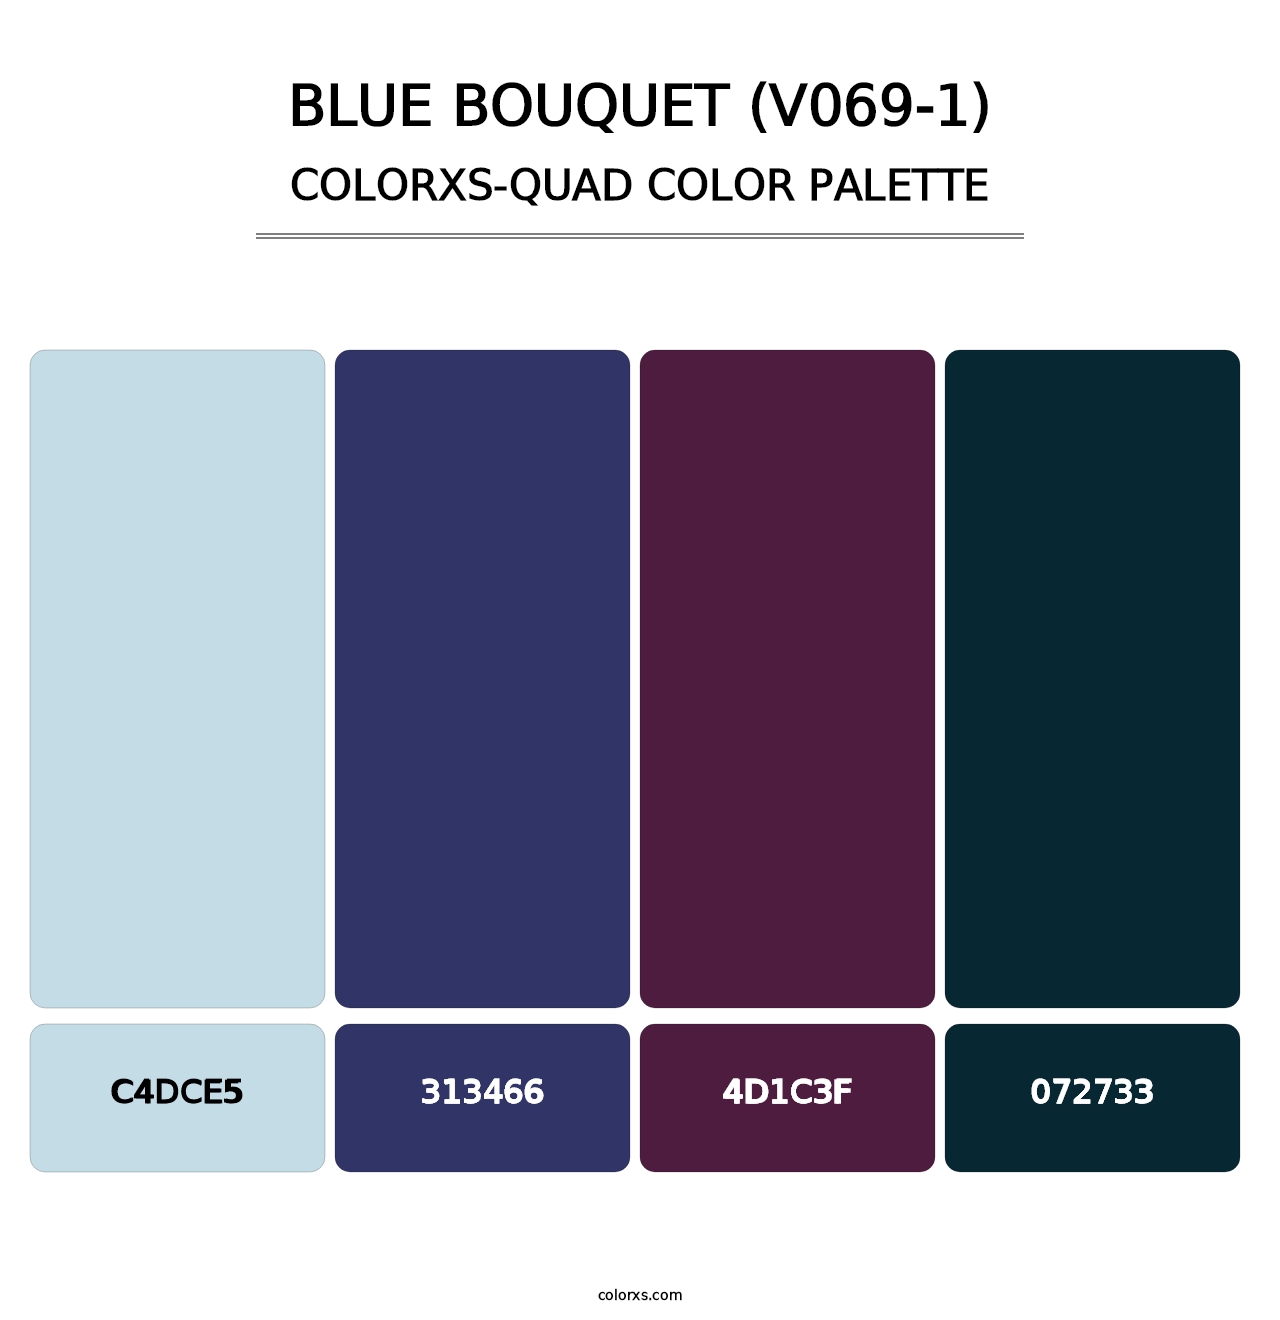 Blue Bouquet (V069-1) - Colorxs Quad Palette